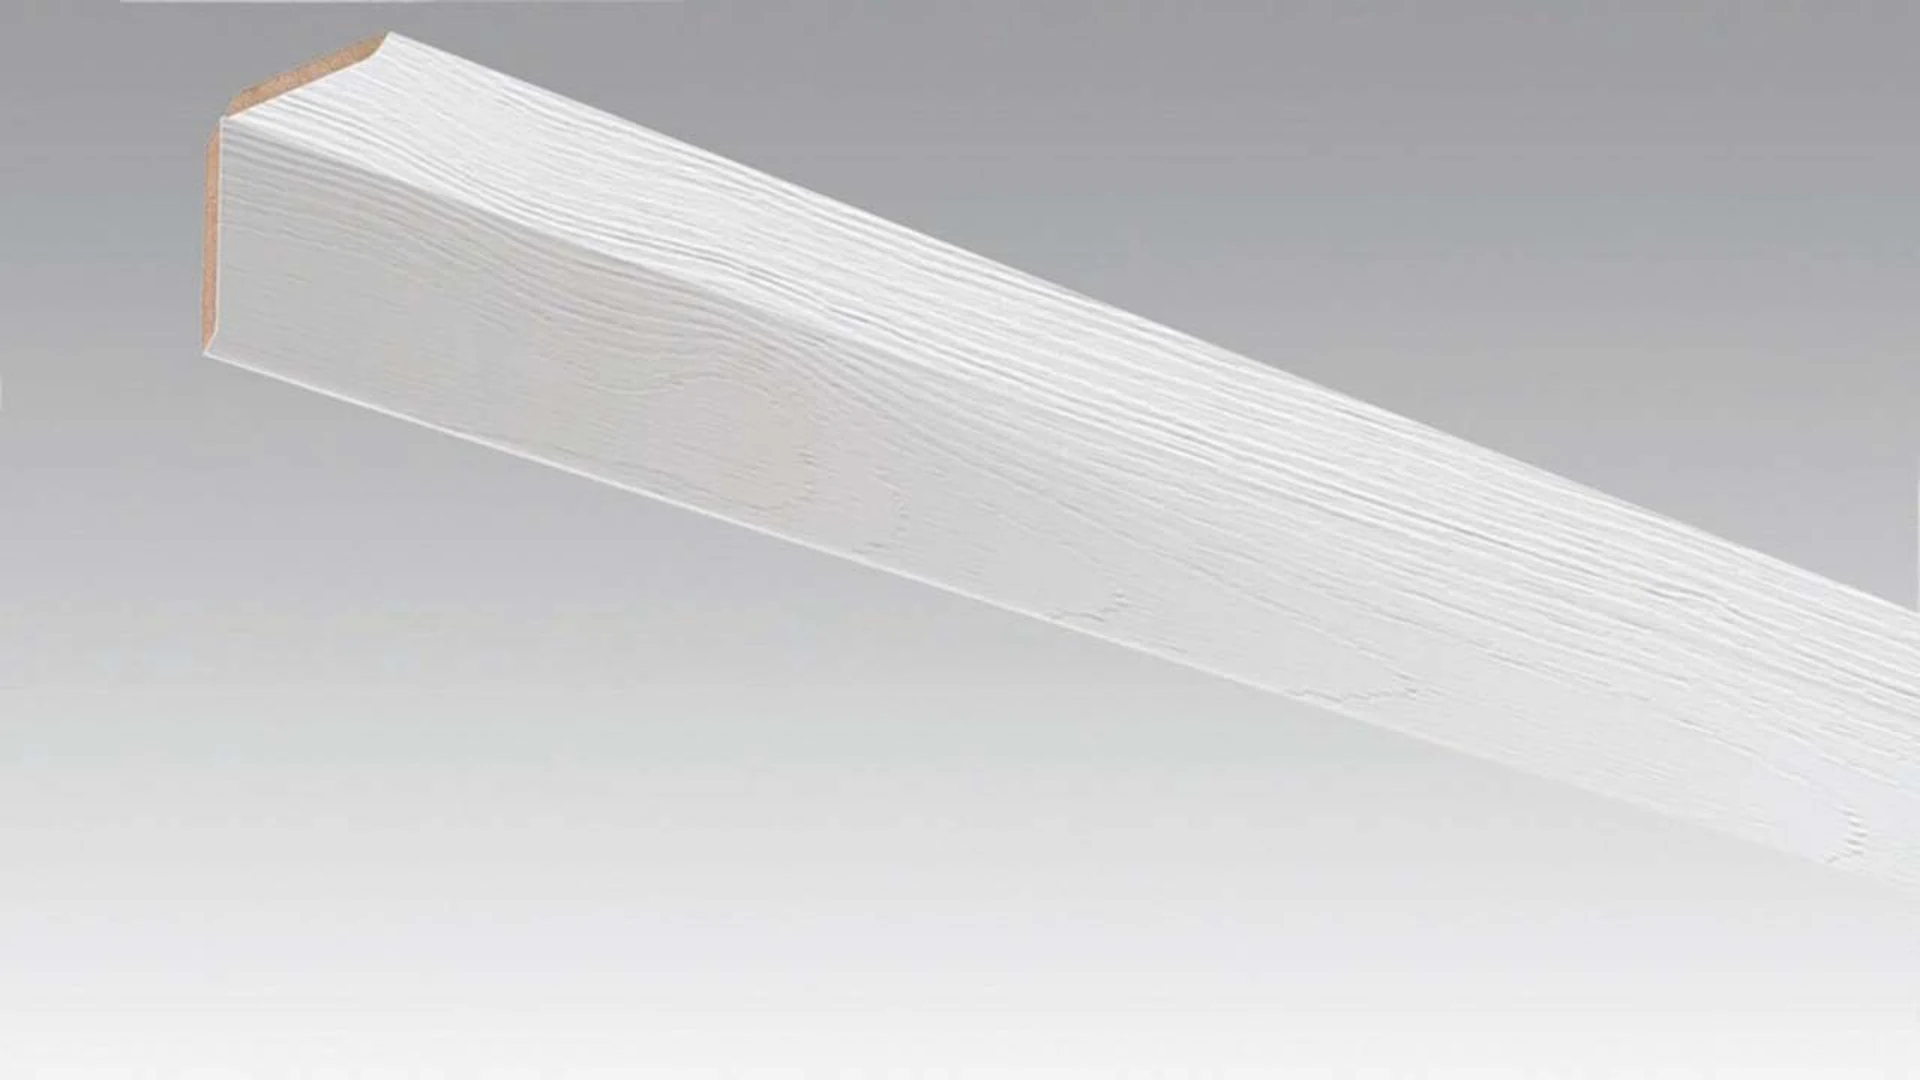 MEISTER Faltleiste Mountain Wood white 4205 - 2380 x 70 x 3,5 mm (200033-2380-04205)